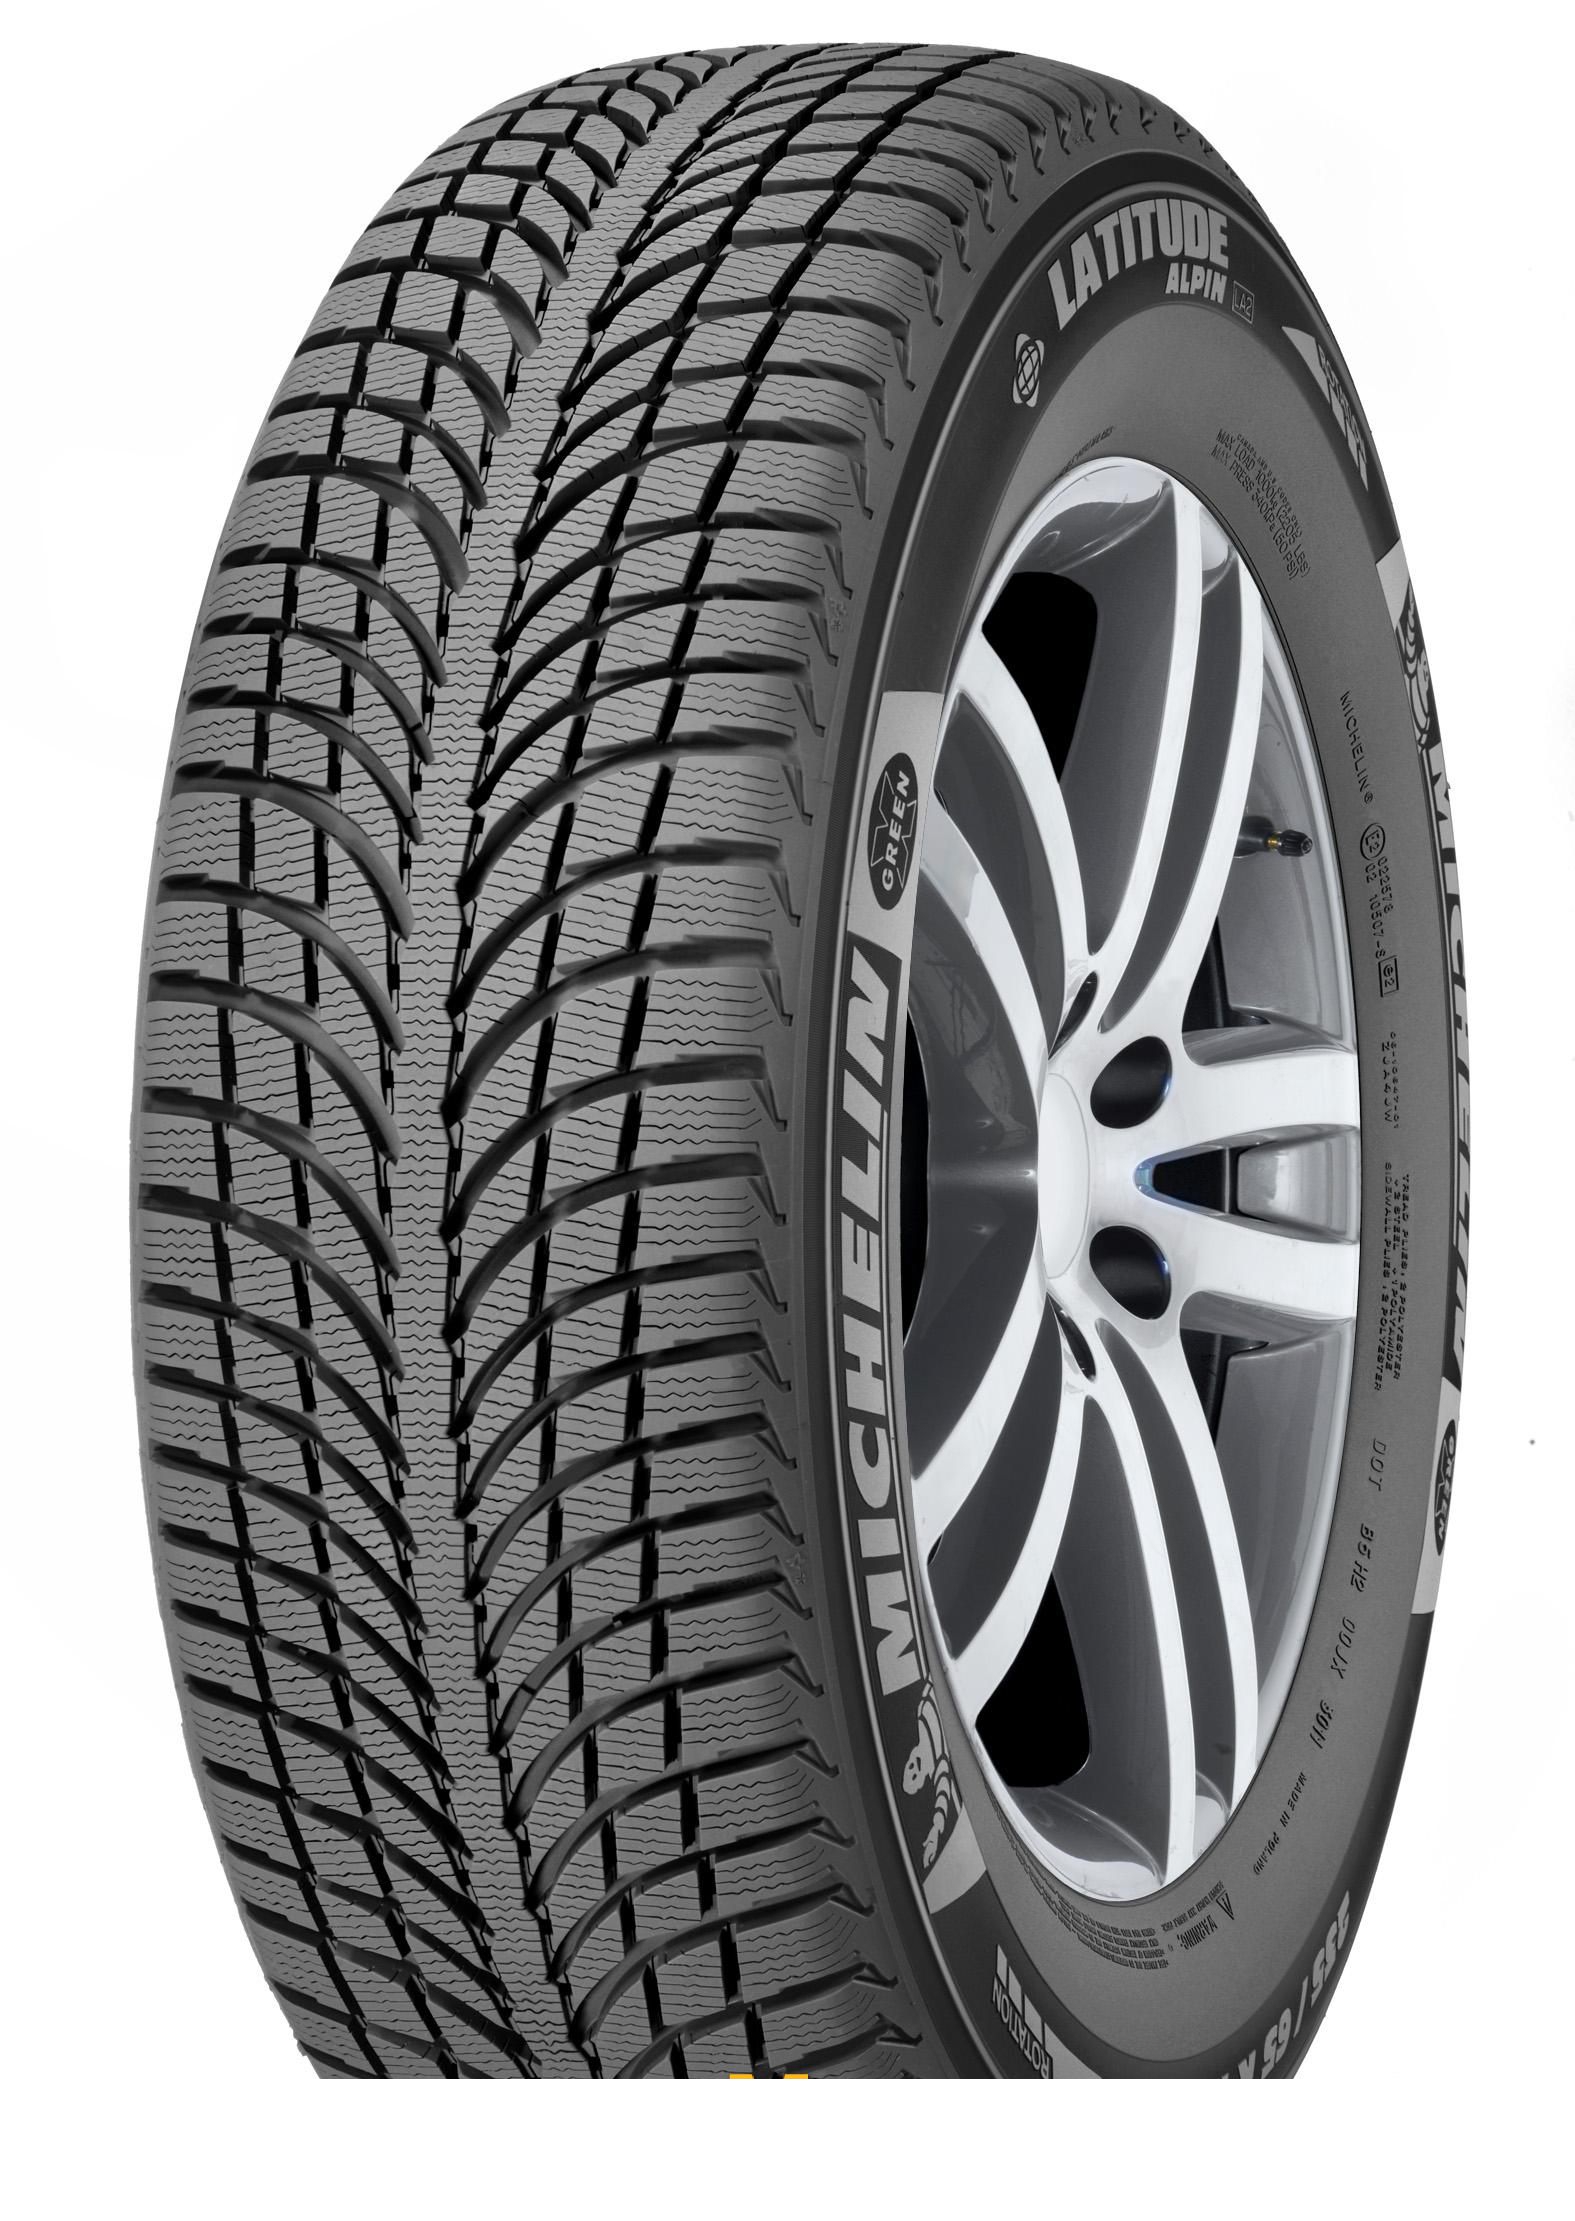 Tire Michelin Latitude Alpin 2 215/70R16 104H - picture, photo, image